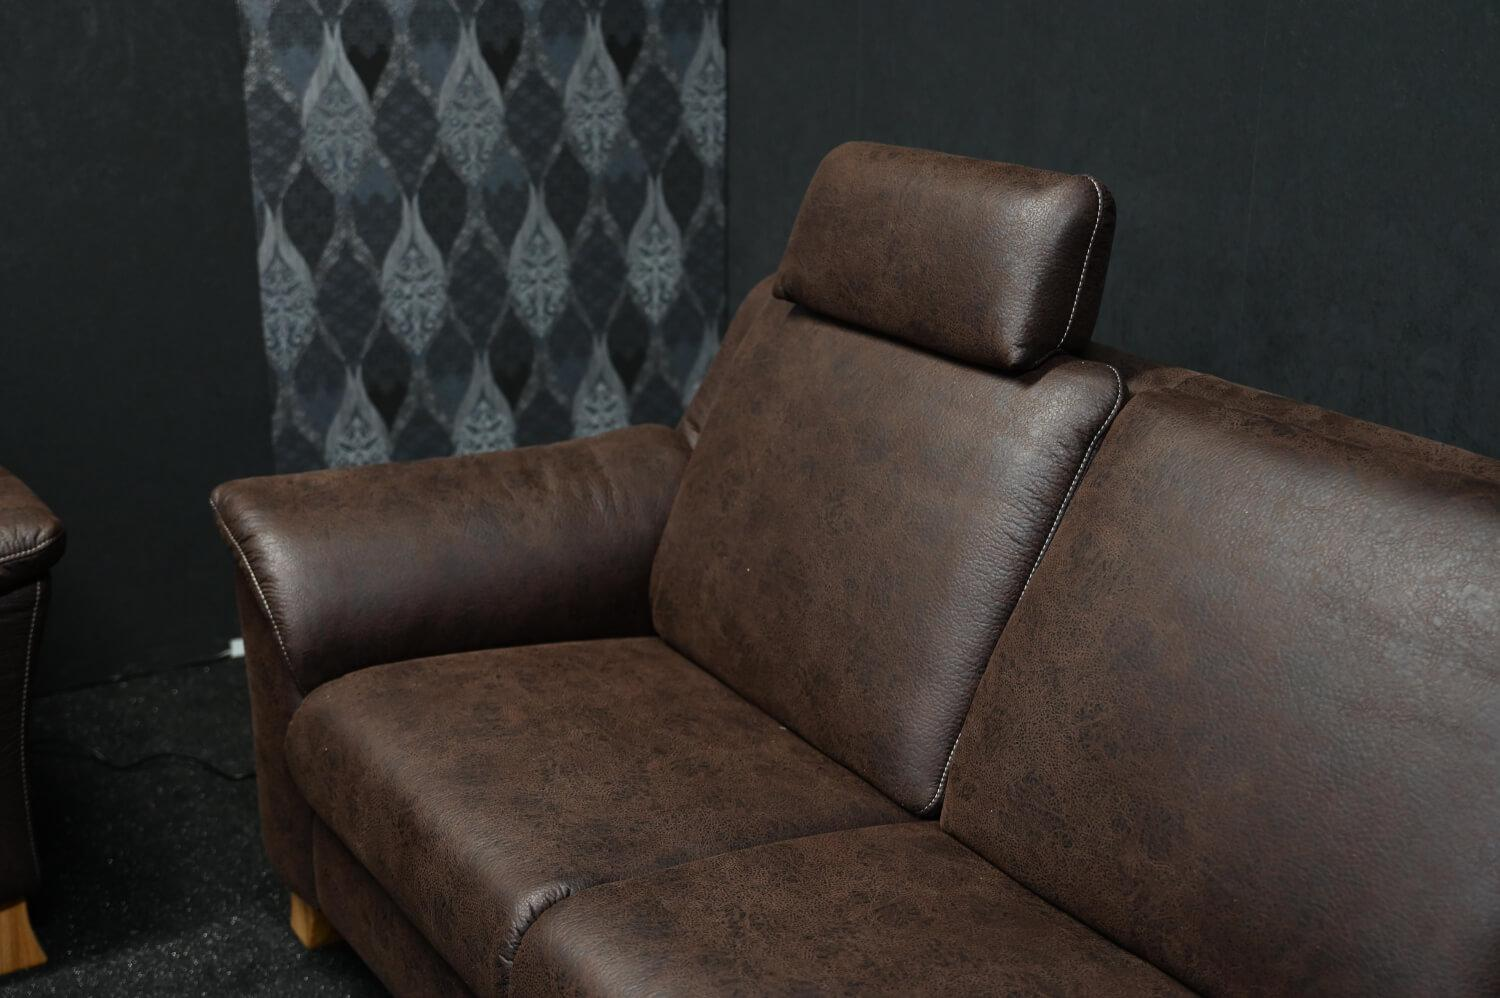 Garnitur Orion Stoff Büffel Dunkelbraun Sofa mit Relaxfunktionen und Elektrischem Vorziehbett